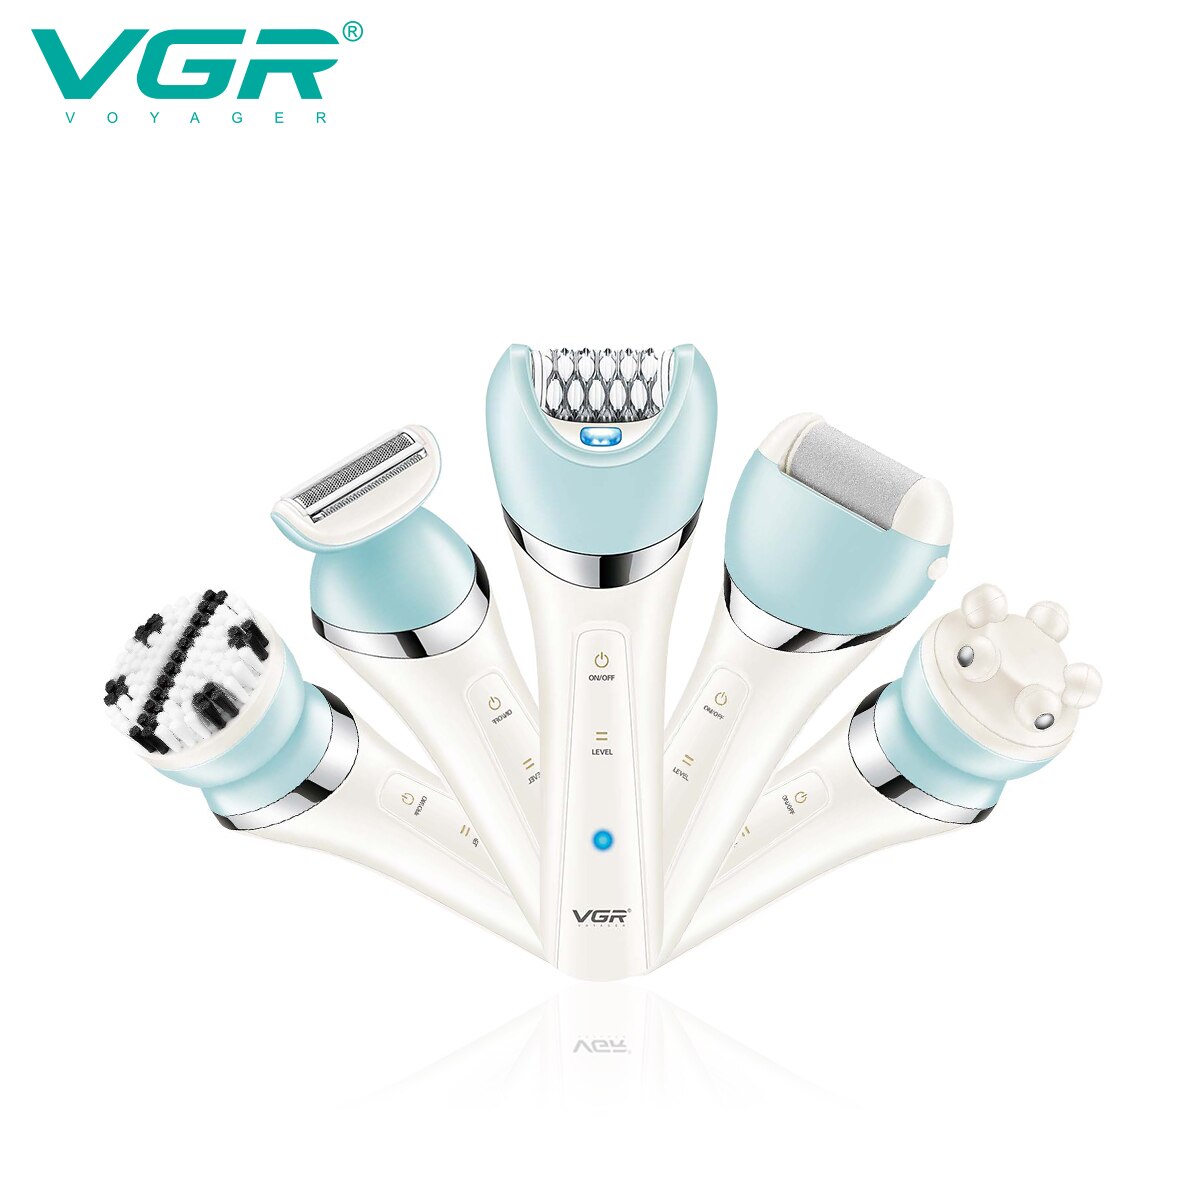 Máy cạo lông điện VGR Voyager V-703 đa năng 5 Trong 1 chống thấm nước với 2 tốc độ sử dụng - Hàng nhập khẩu